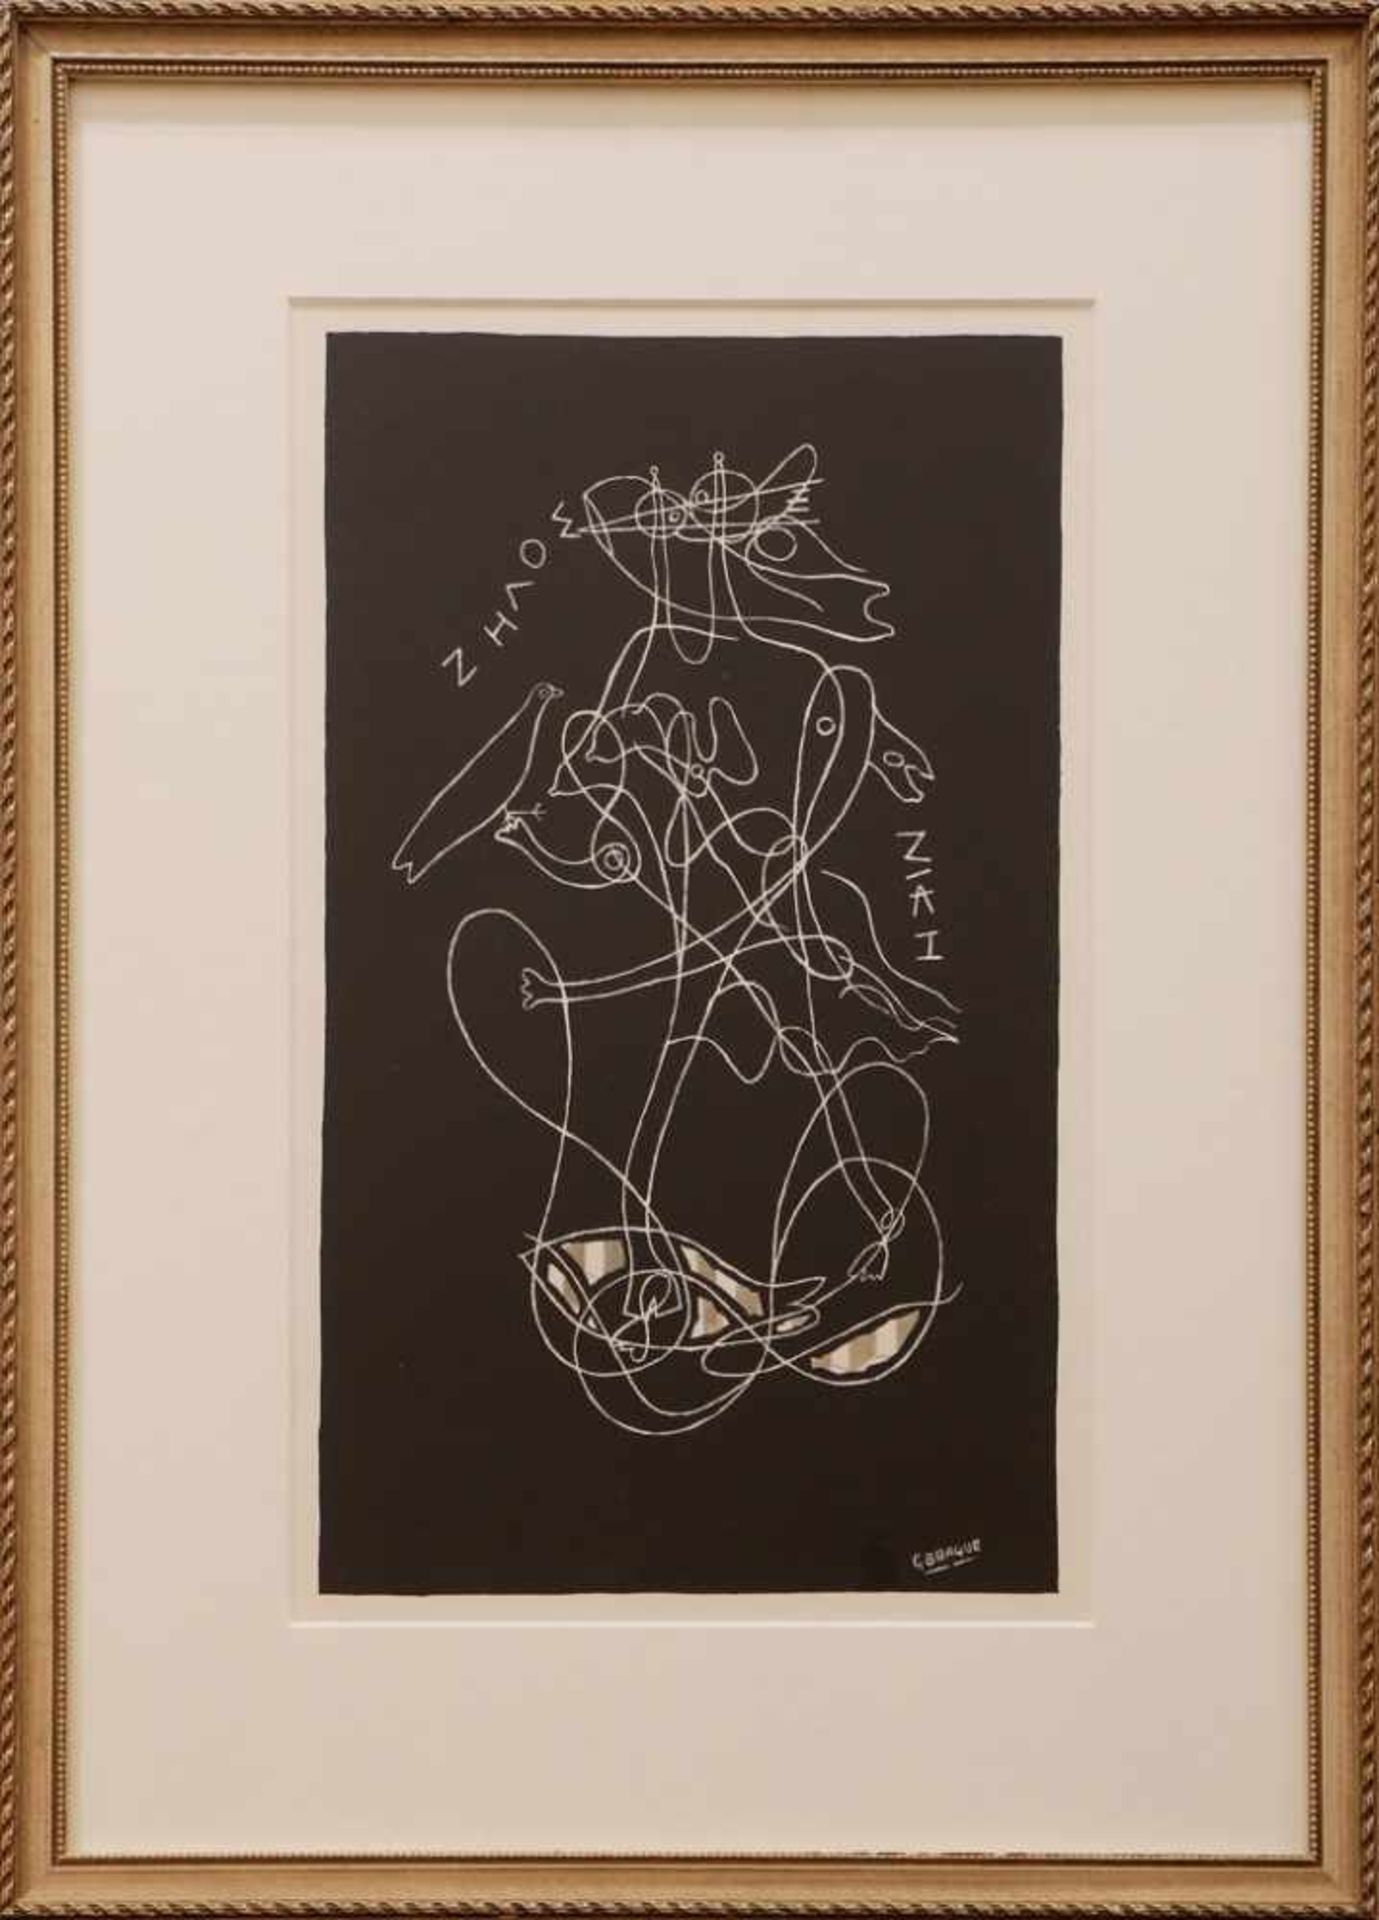 GEORGES BRAQUE (1882 Argenteuil-1963 Paris) Lithographie, ¨Zelos und Nike¨ (1959), unten rechts